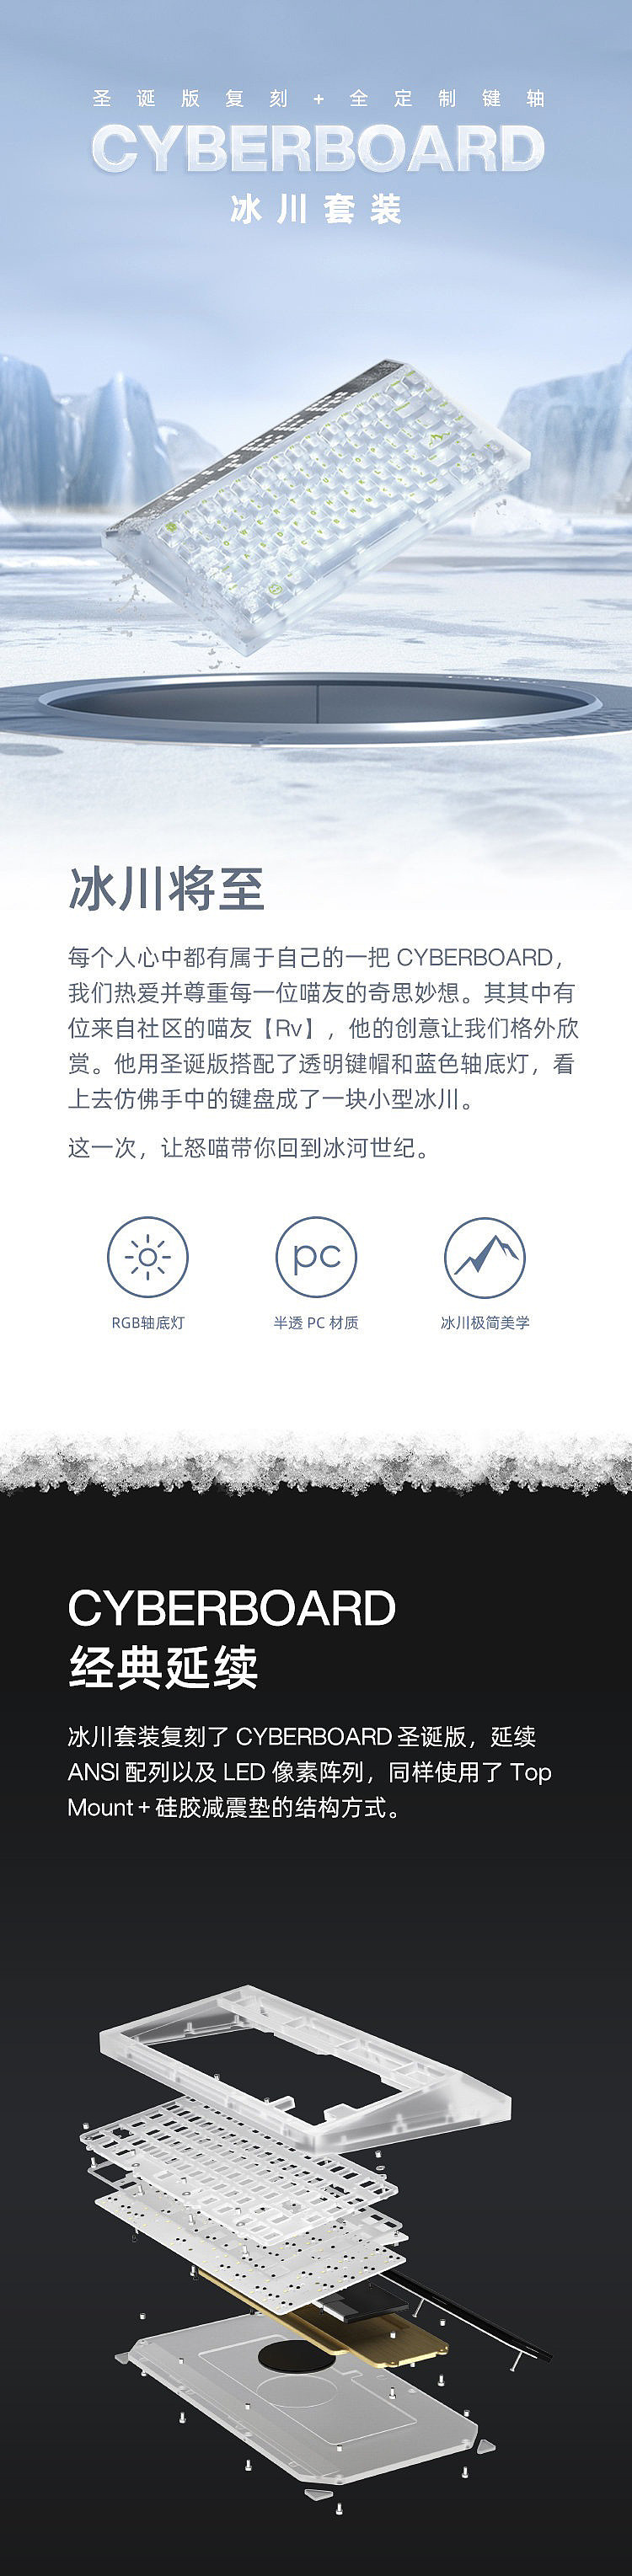 AngryMiao 发布 Cyberboard 冰川套装全透明键盘：3800 元 - 1